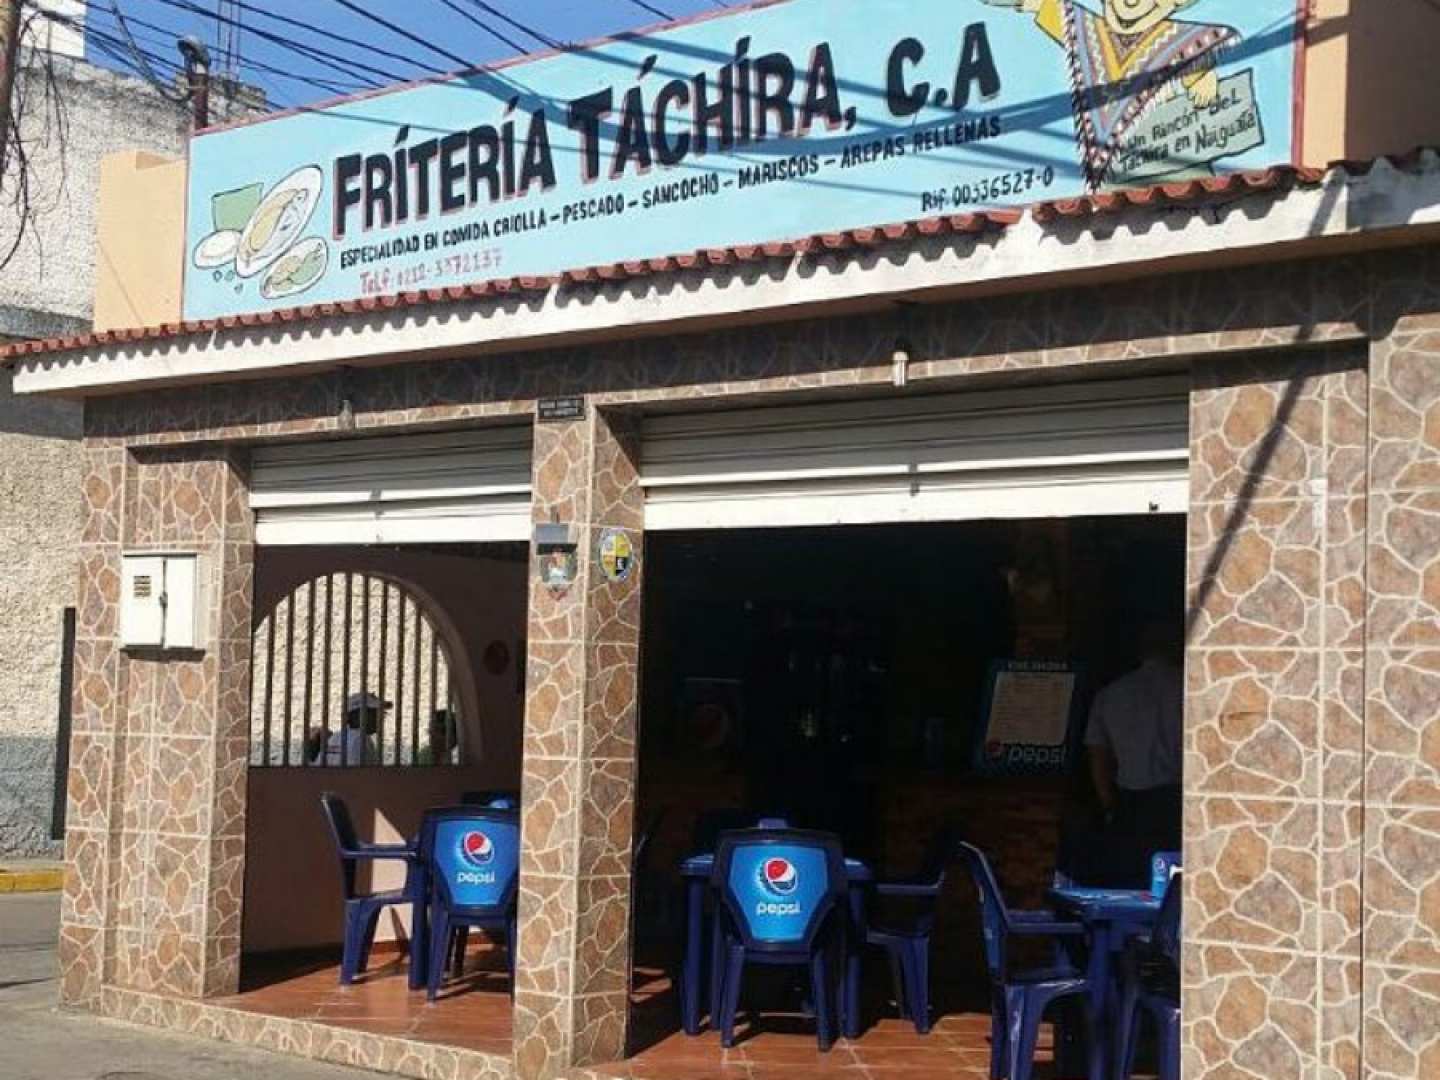 Friteria Tachira